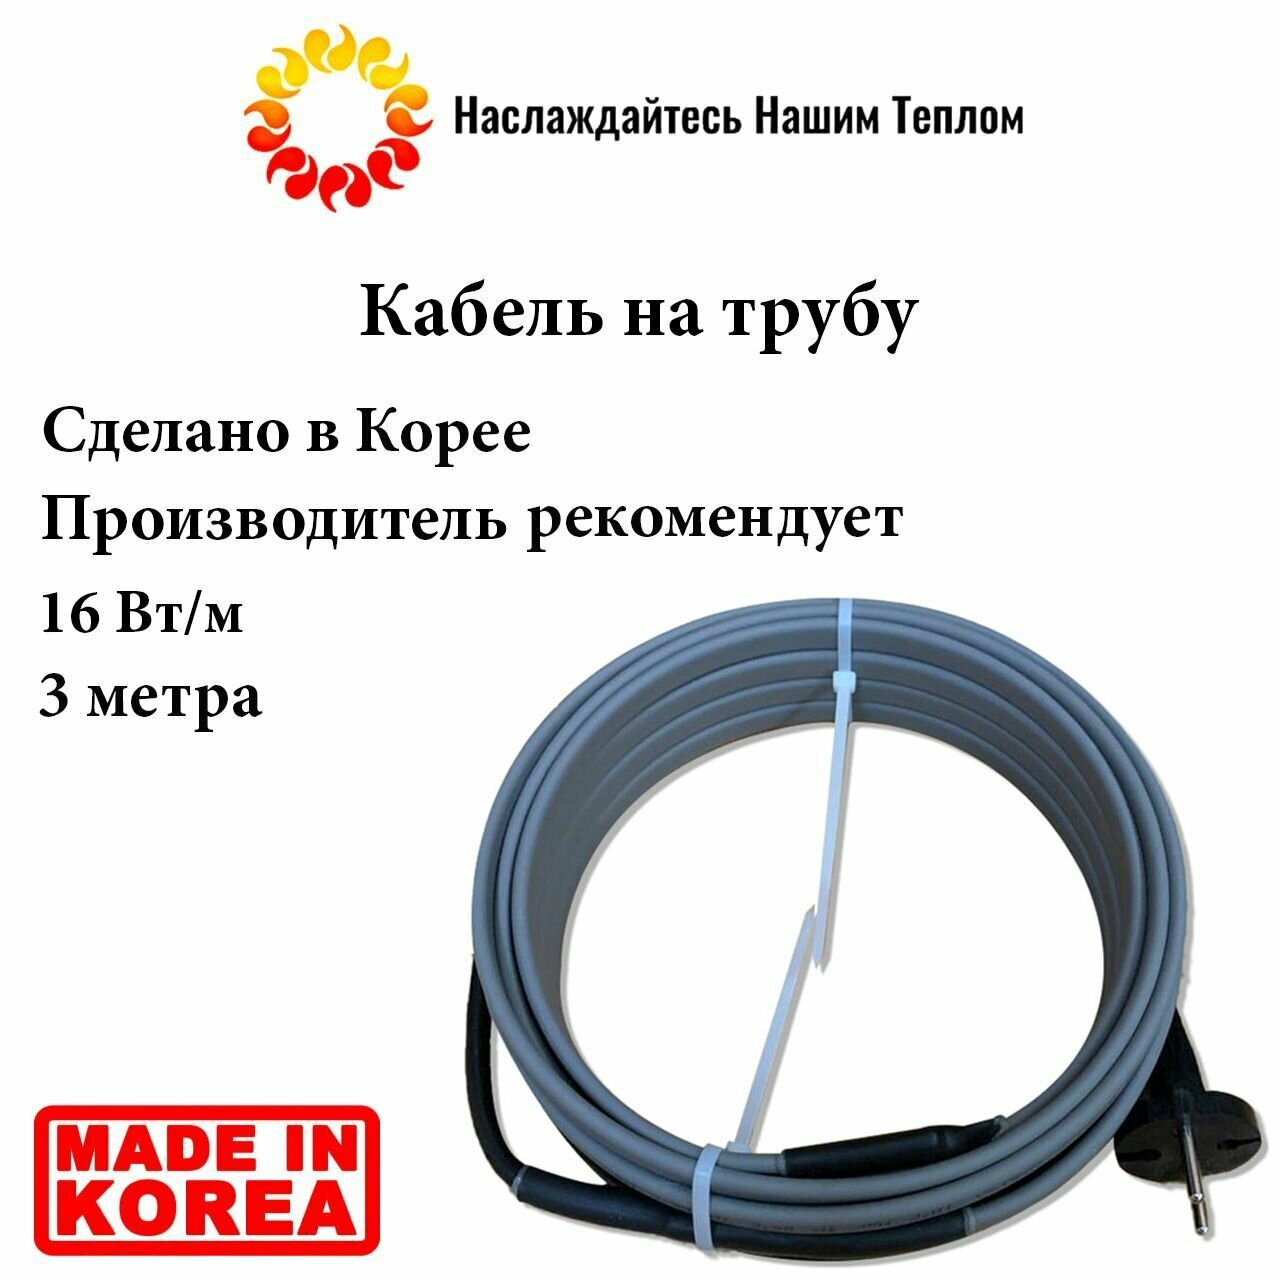 Саморегулирующийся наружный кабель на трубу 16 Вт/м, 3 метра, произведено в Южной Корее